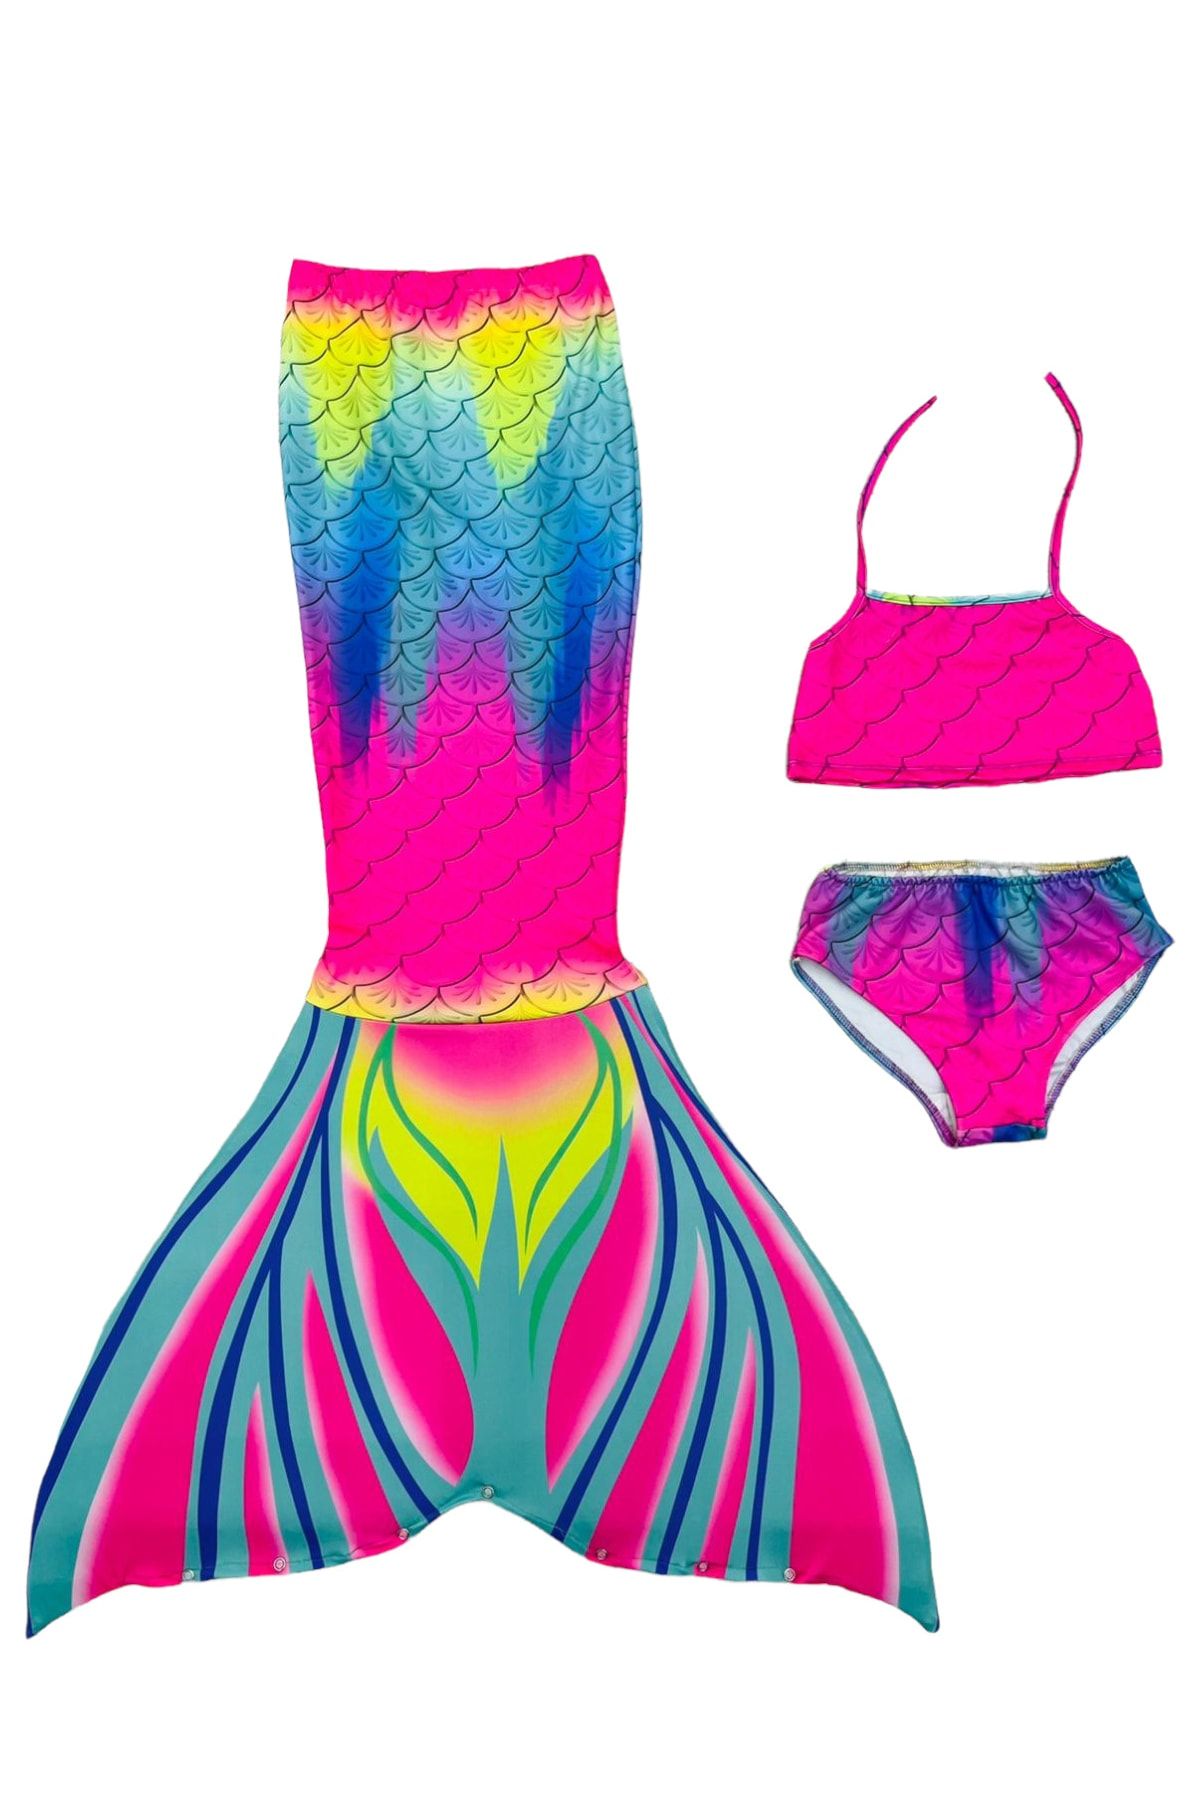 Lolliboomkids Kız Çocuk Deniz Kızı Kuyruklu Kostüm Mayo Bikini Takımı 3 Parça Son Moda Gökkuşağı